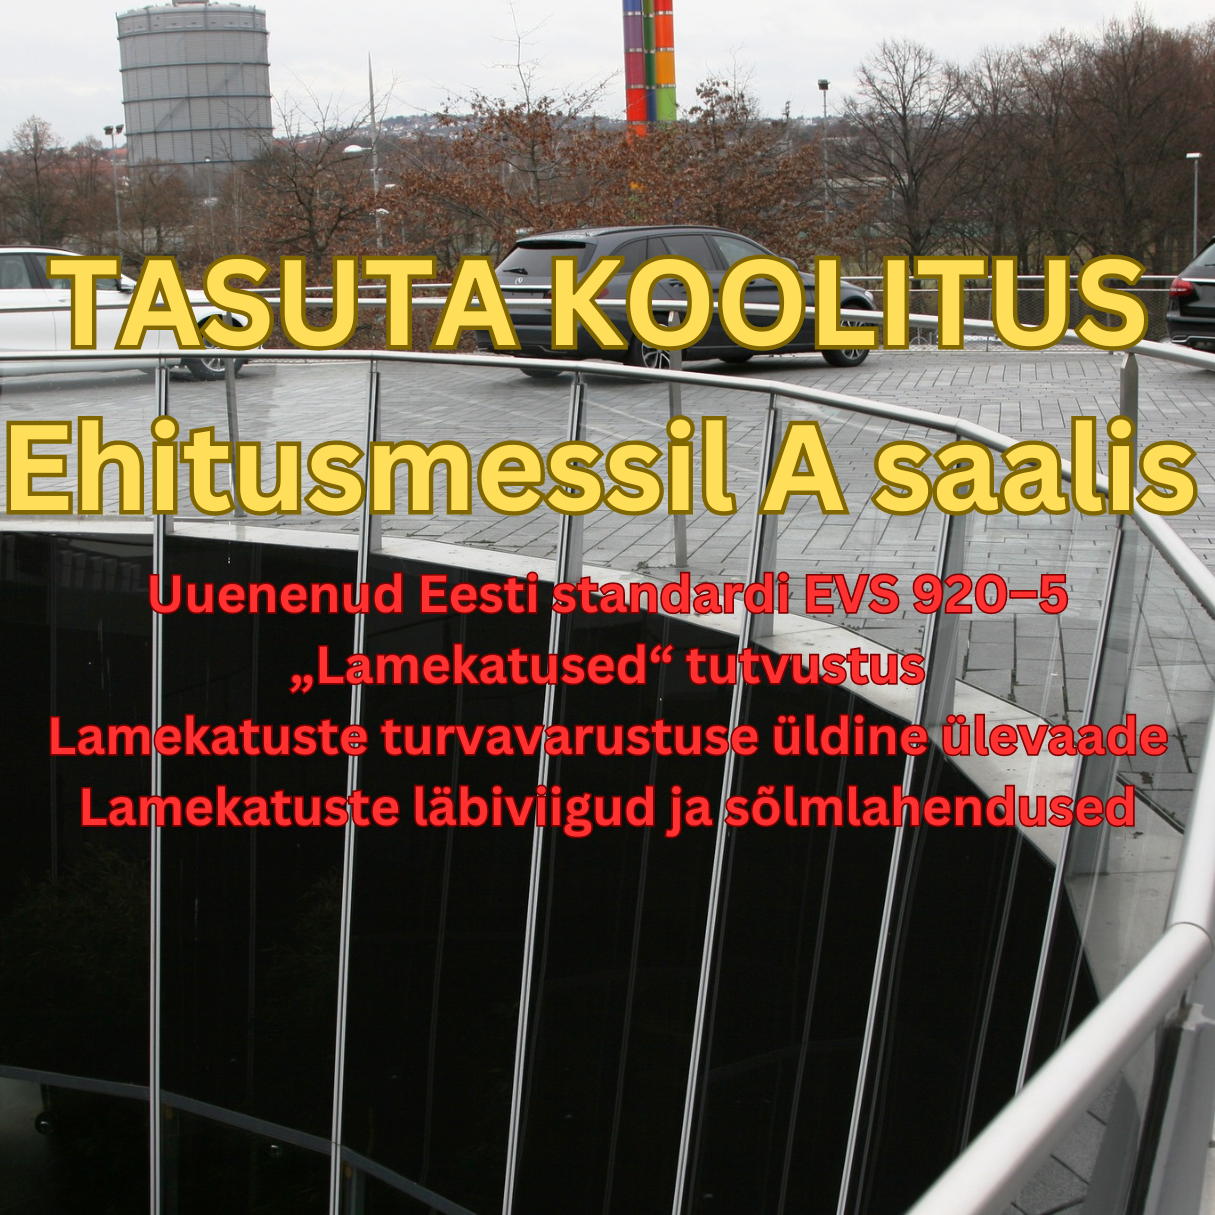 The post Uut lamekatuse standardit ja kukkumiskaitset tutvustav koolitus appeared first on Eesti Katuse ja Fassaadimeistrite Liit.